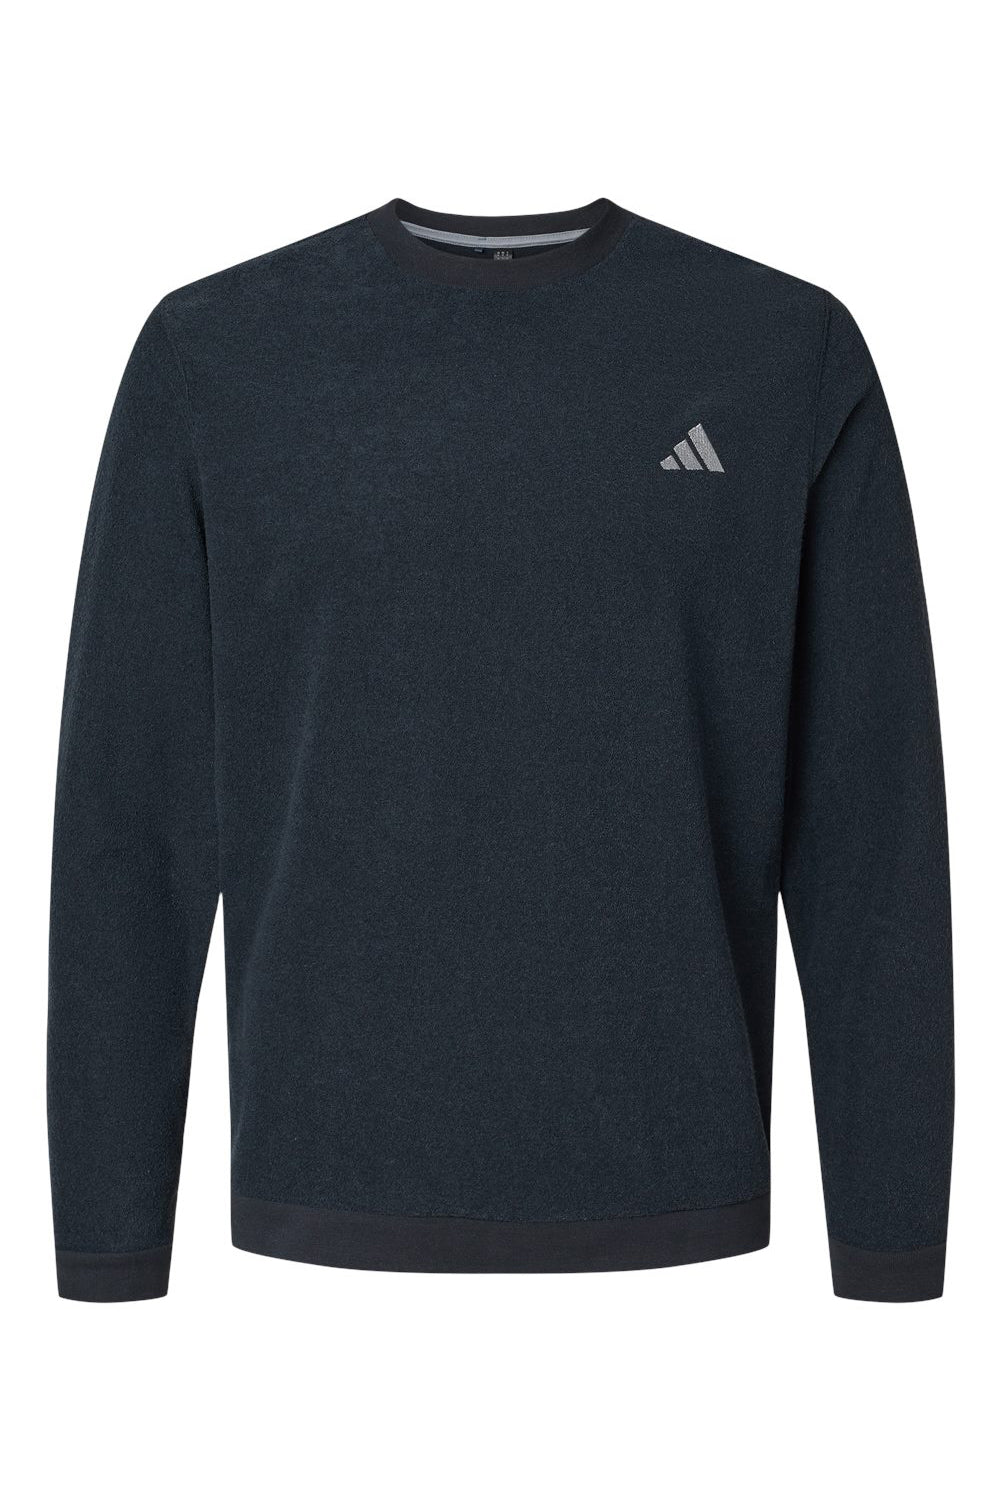 Adidas A586 Mens Crewneck Sweatshirt Black Flat Front